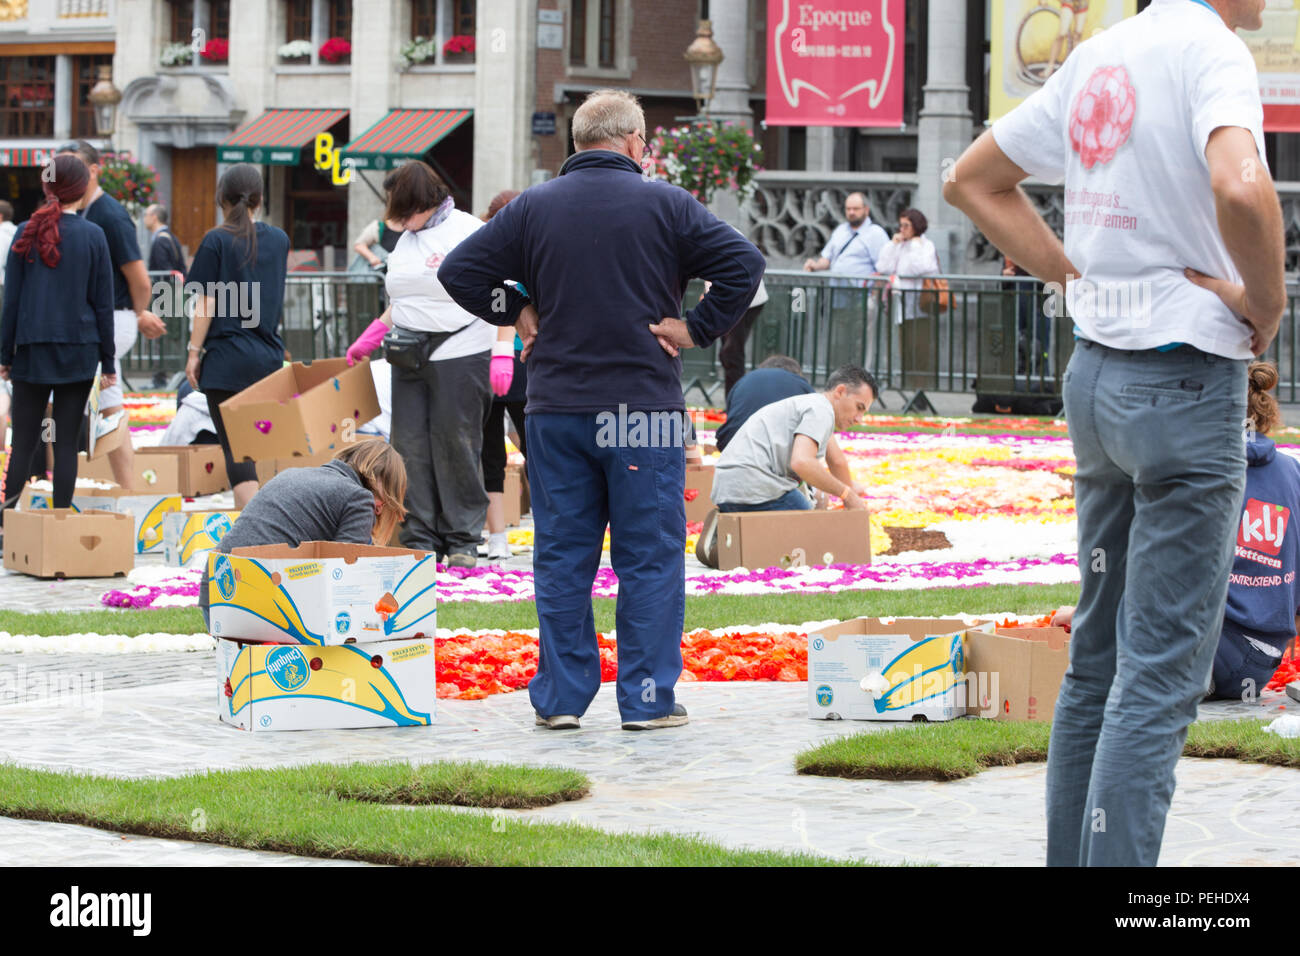 Brüssel, Belgien. 16. Aug 2018. Alle 2 Jahre die Grand-Place in Brüssel ist mit einer Blume Teppich bedeckt. Das Thema 2018 ist Mexiko die Blume Teppich zu Guanajuato einen mexikanischen Region gewidmet ist. Credit: Steven roe/Alamy leben Nachrichten Stockfoto